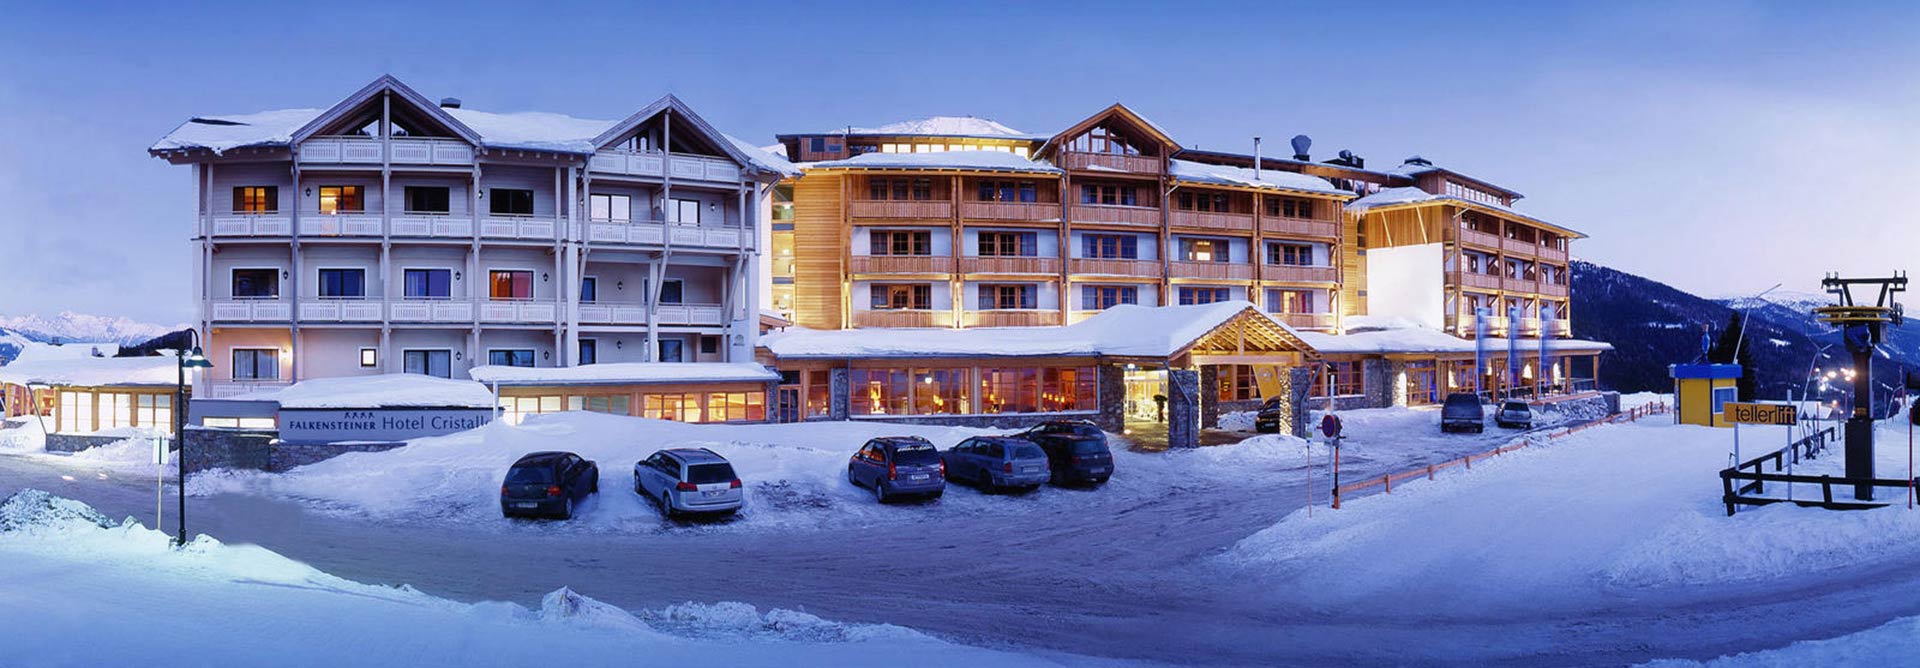 Falkensteiner Hotel Cristallo im Winter